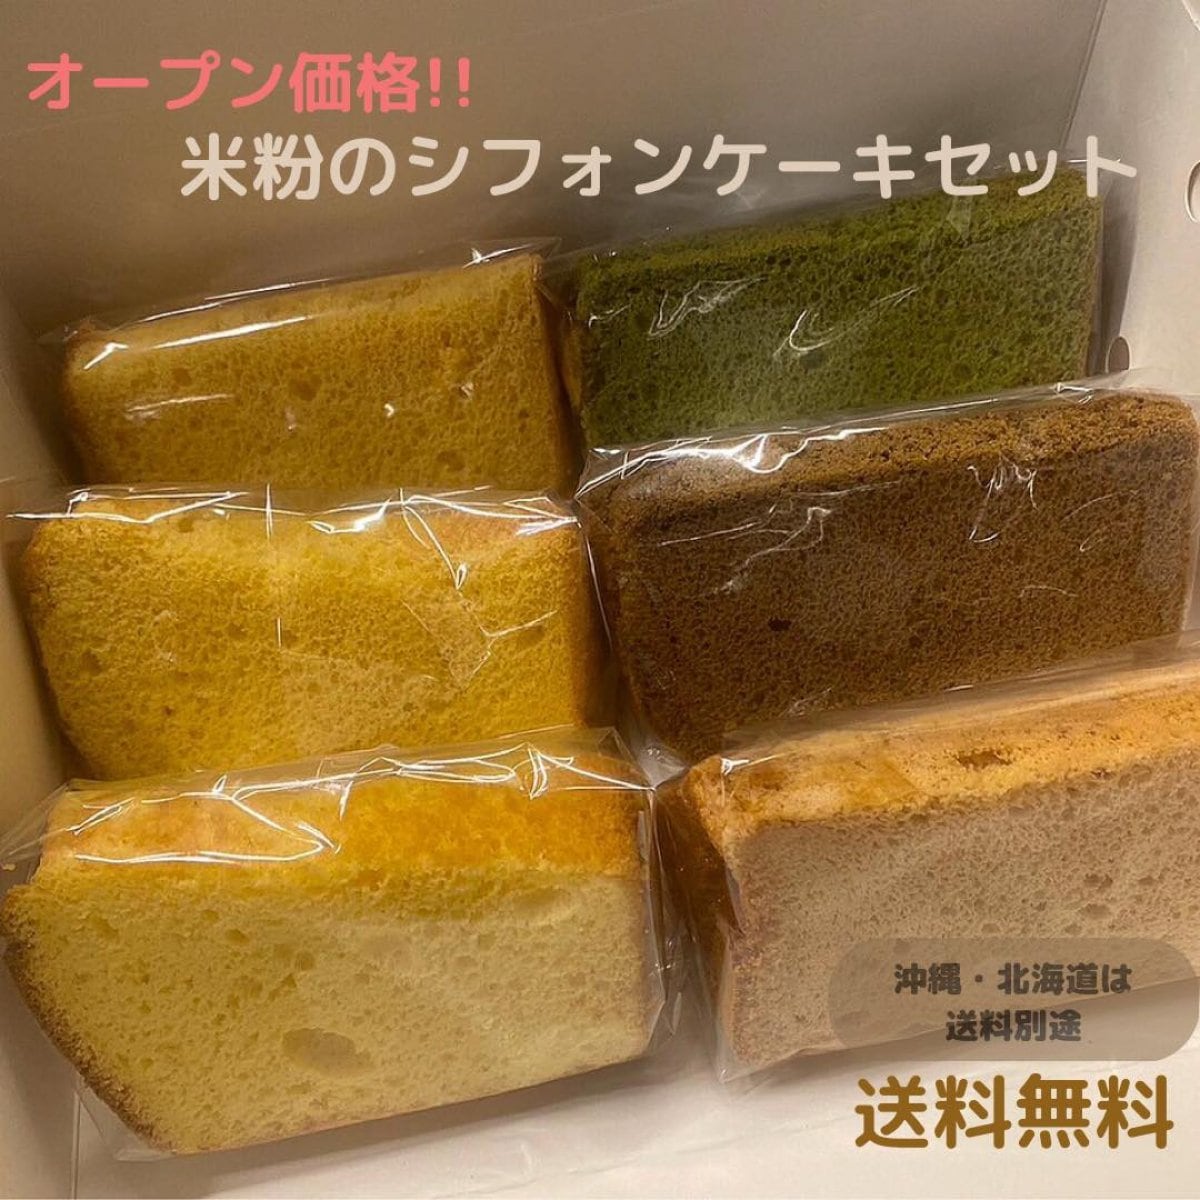 米粉シフォンケーキ通販|6個セット【送料無料】